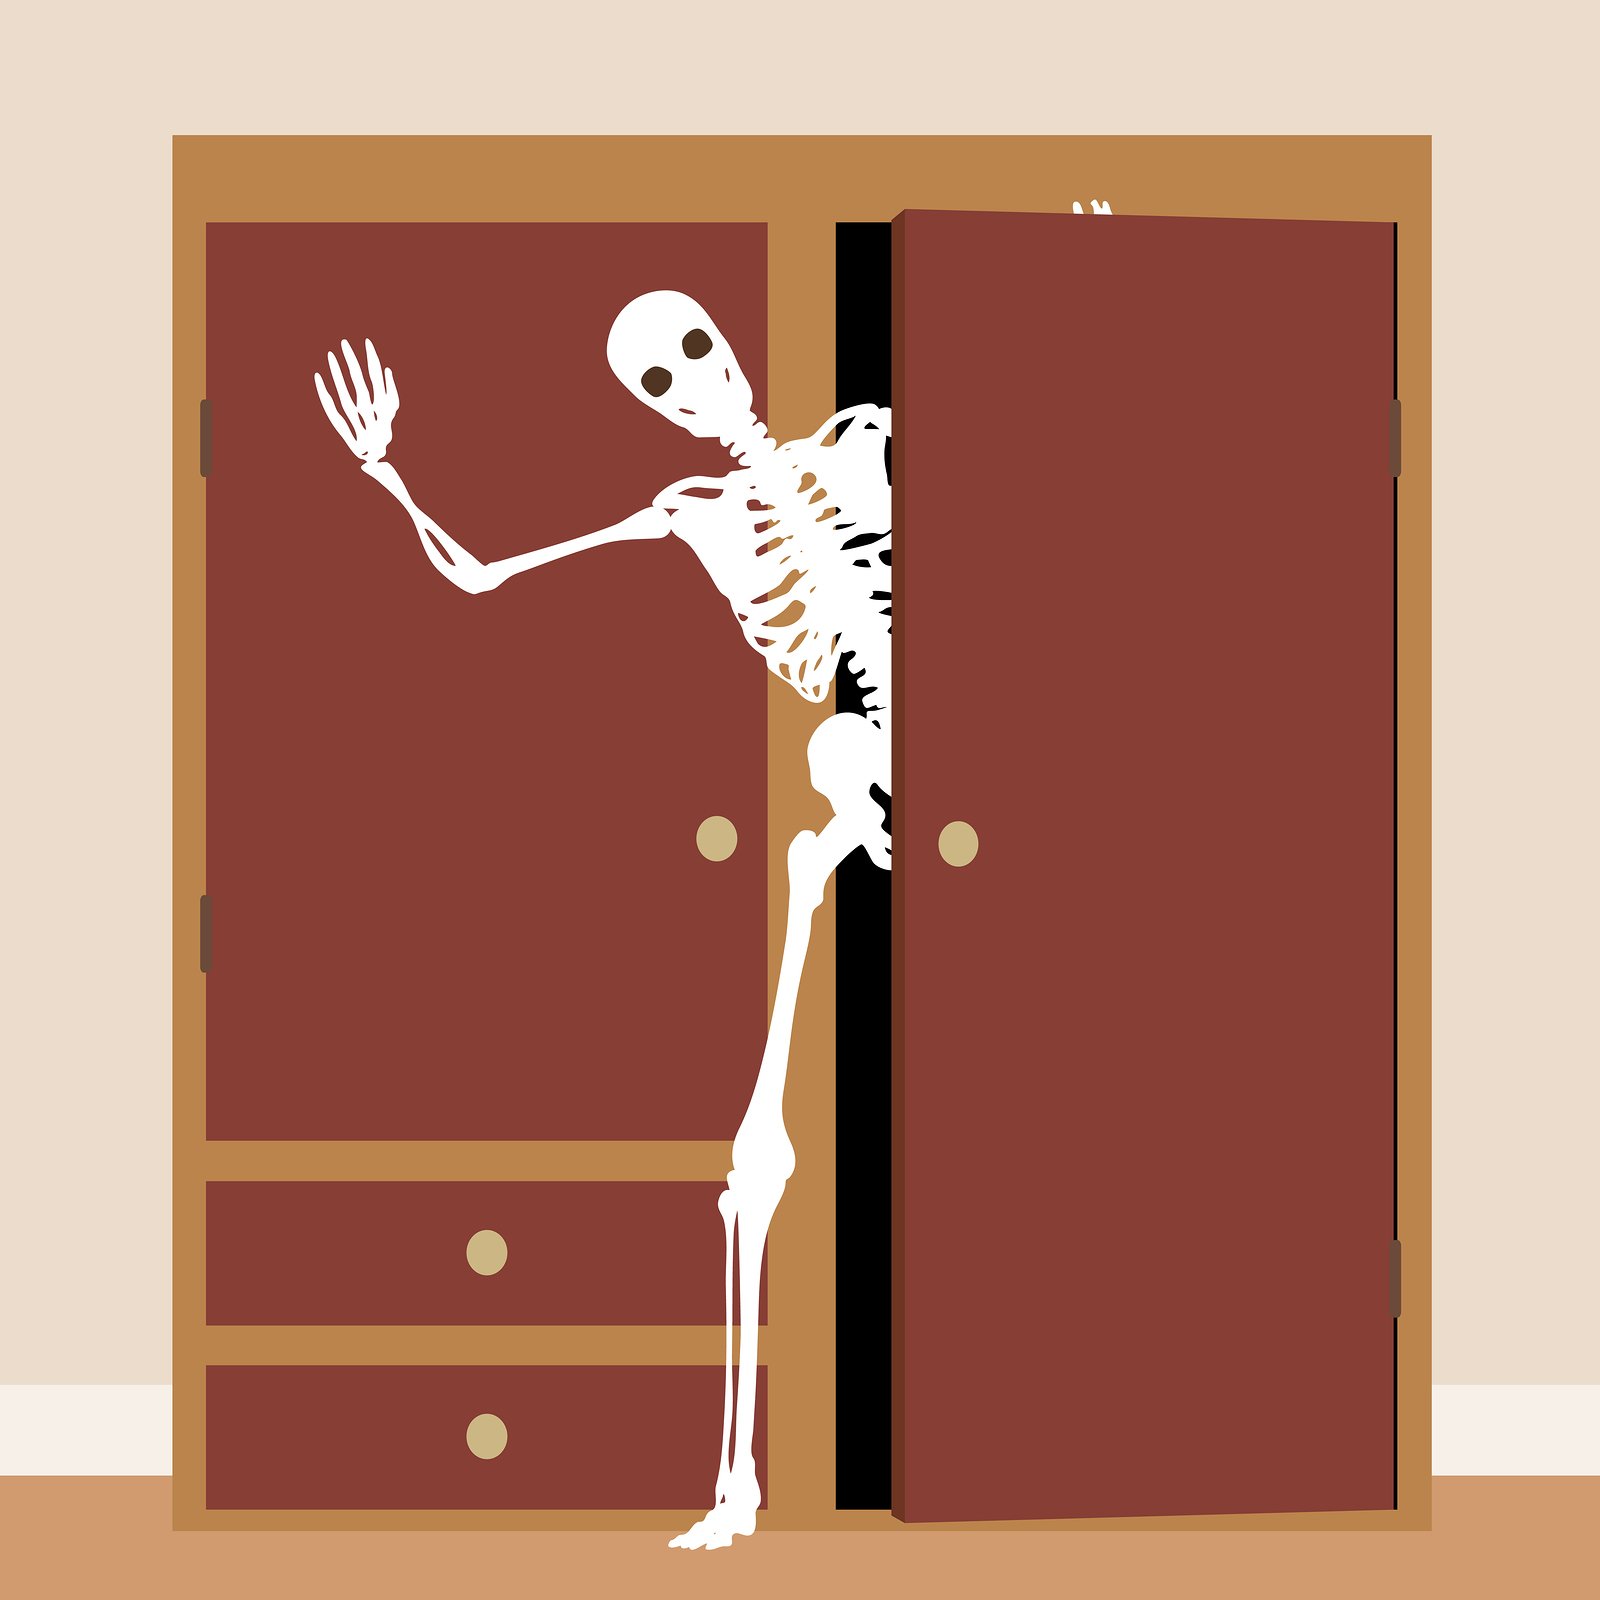 скелет в шкафу карикатура